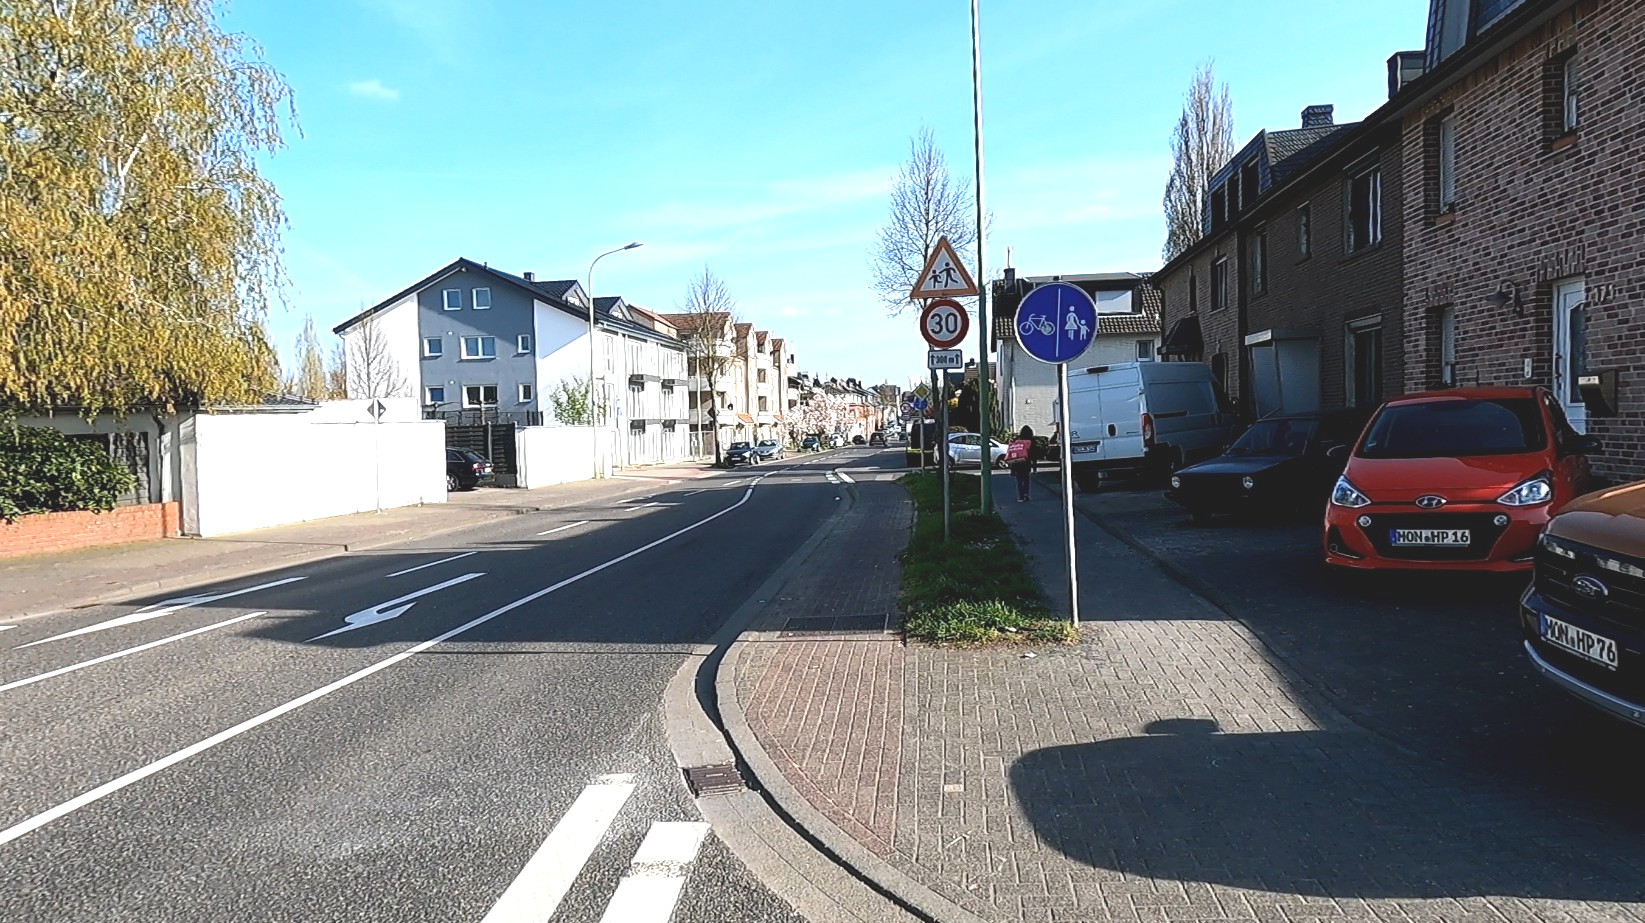 Bild: Auf der Kapellenstraße wird in einem Bereich mit Höchstgeschwindigkeit 30km/h eine Benutzungspflicht angeordnet, was nicht erlaubt ist